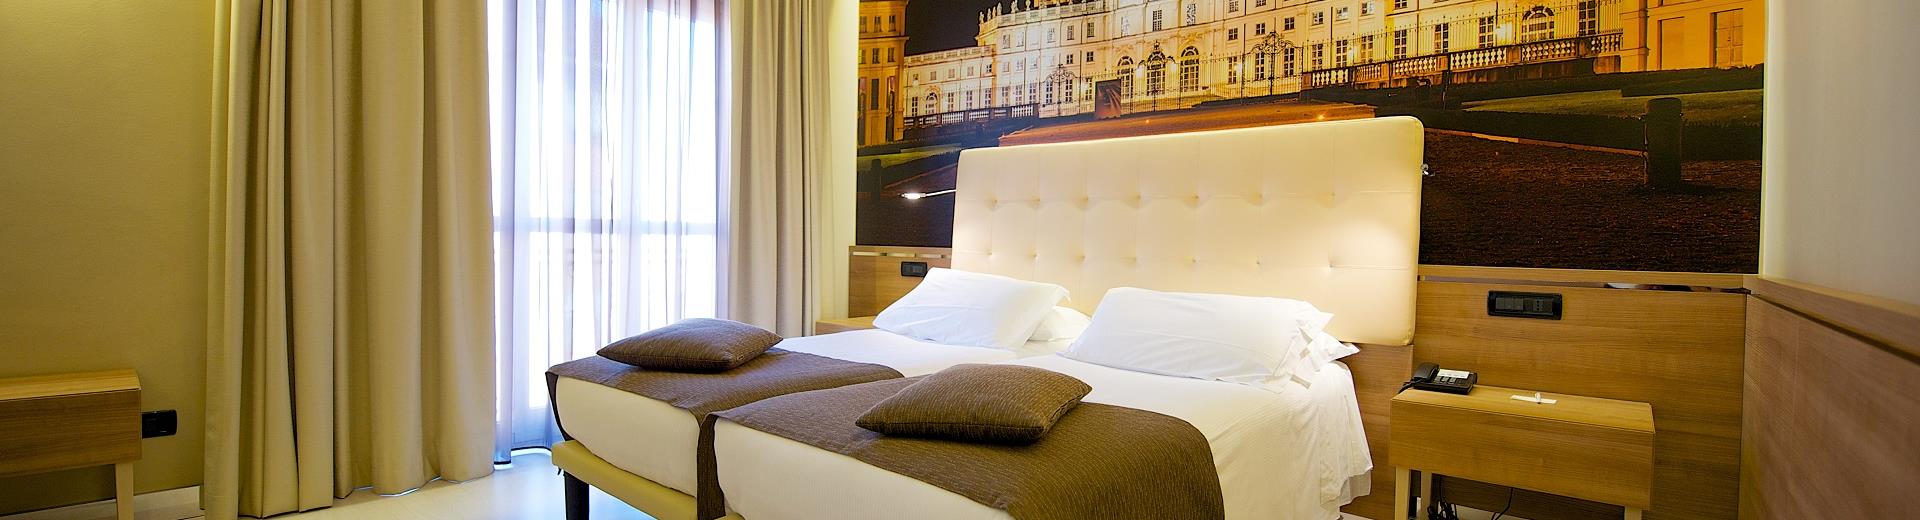 Goditi il comfort di un soggiorno a 4 stelle in camera Deluxe: scegli hotel Luxor per il tuo soggiorno a Torino!